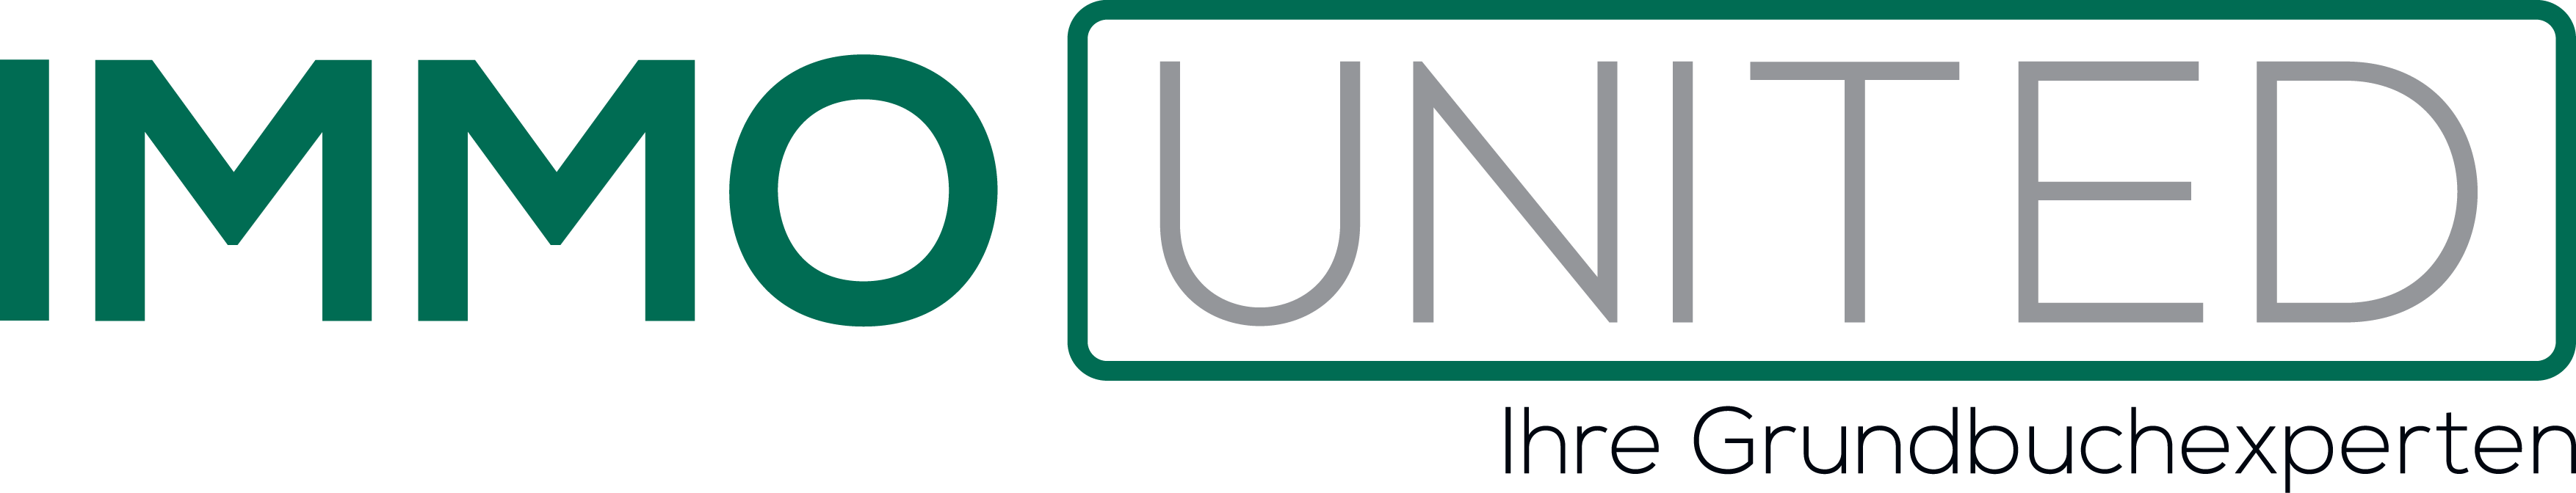 immounited logo